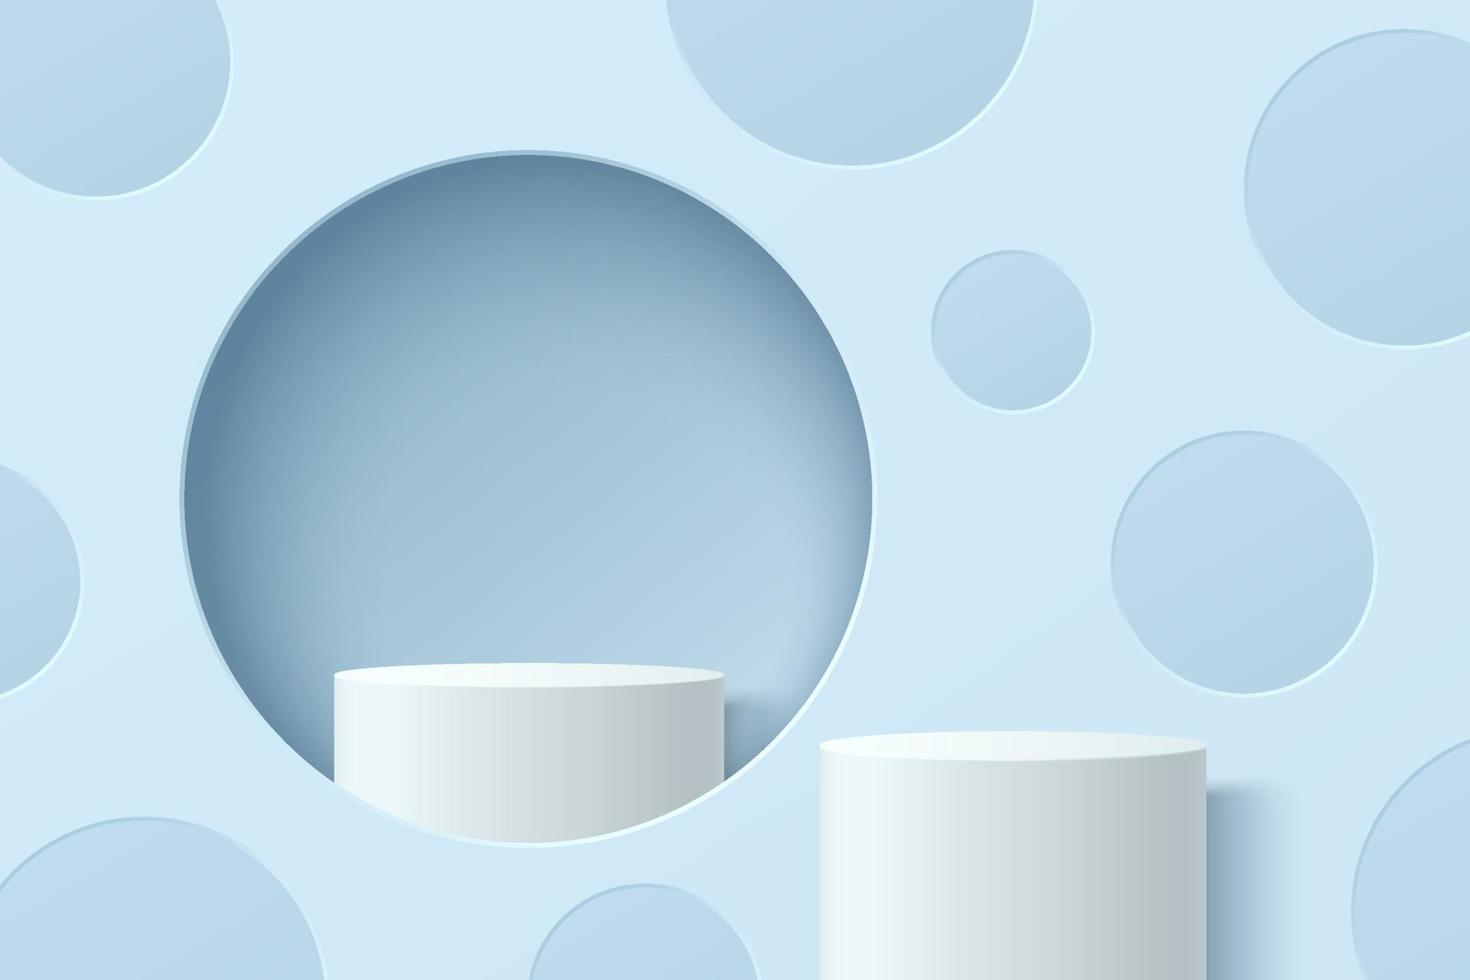 vit, blå realistisk cylinderpiedestalpodium i cirkelfönster med prickmönster. vektor abstrakt studiorum med 3d geometrisk plattform. minimal scen för produkter showcase, promotion display.